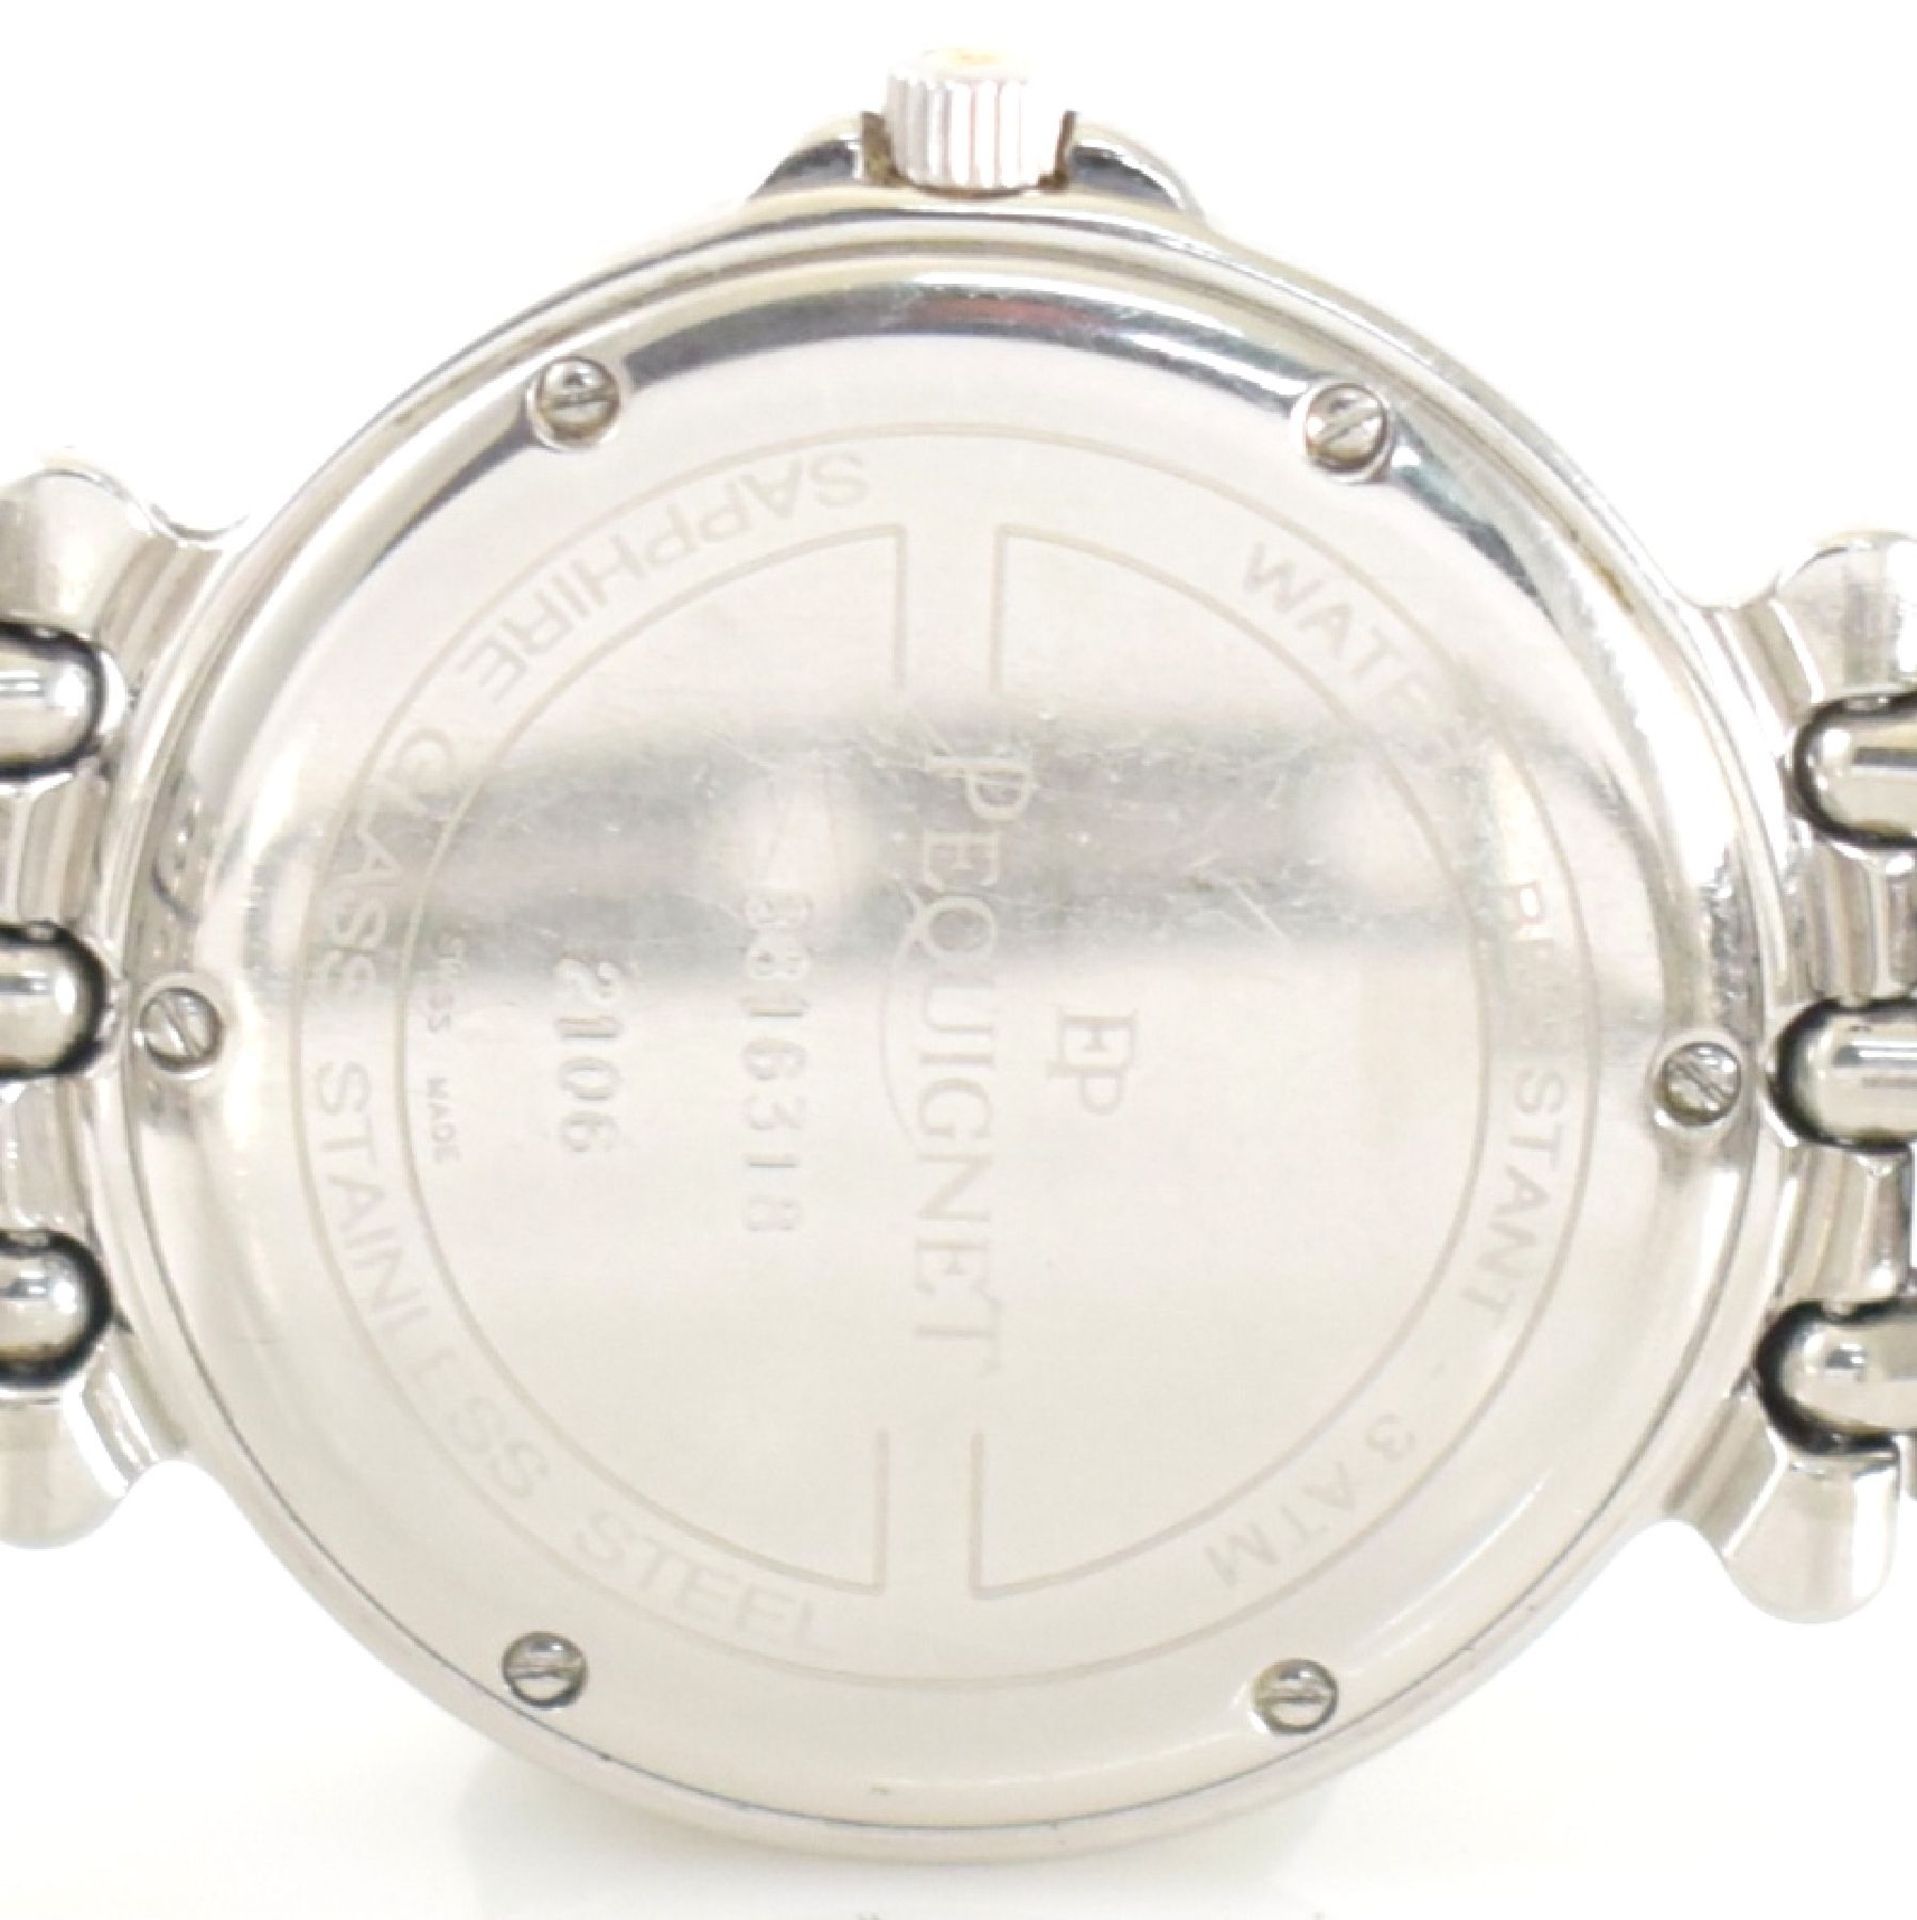 PEQUIGNET Armbanduhr in Bicolor, Schweiz um 2000, quarz, Edelstahlgeh., Boden verchr., gold. Lün. m. - Bild 6 aus 7